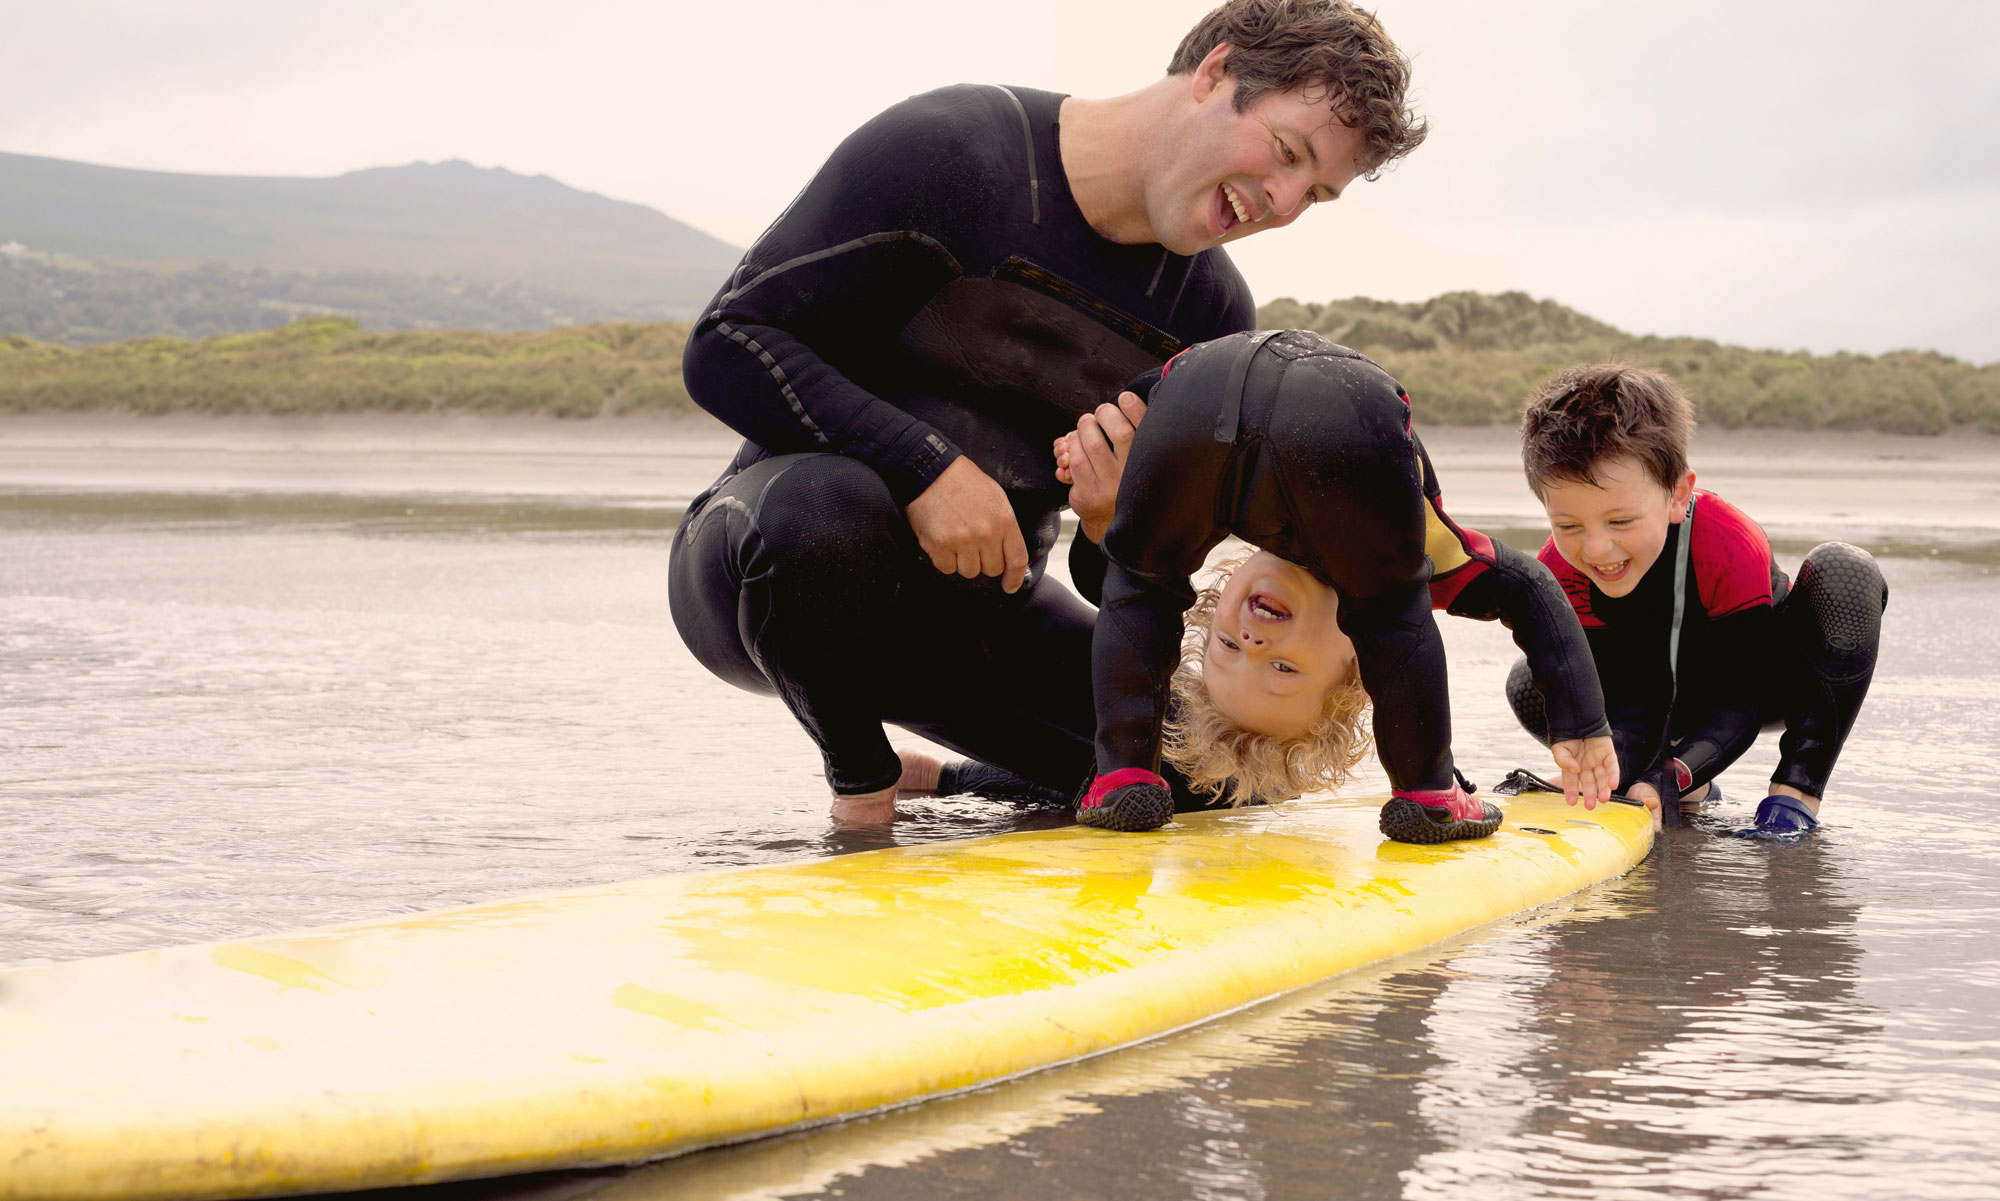 Far med två söner leker på en surfingbräda ute i vattnet